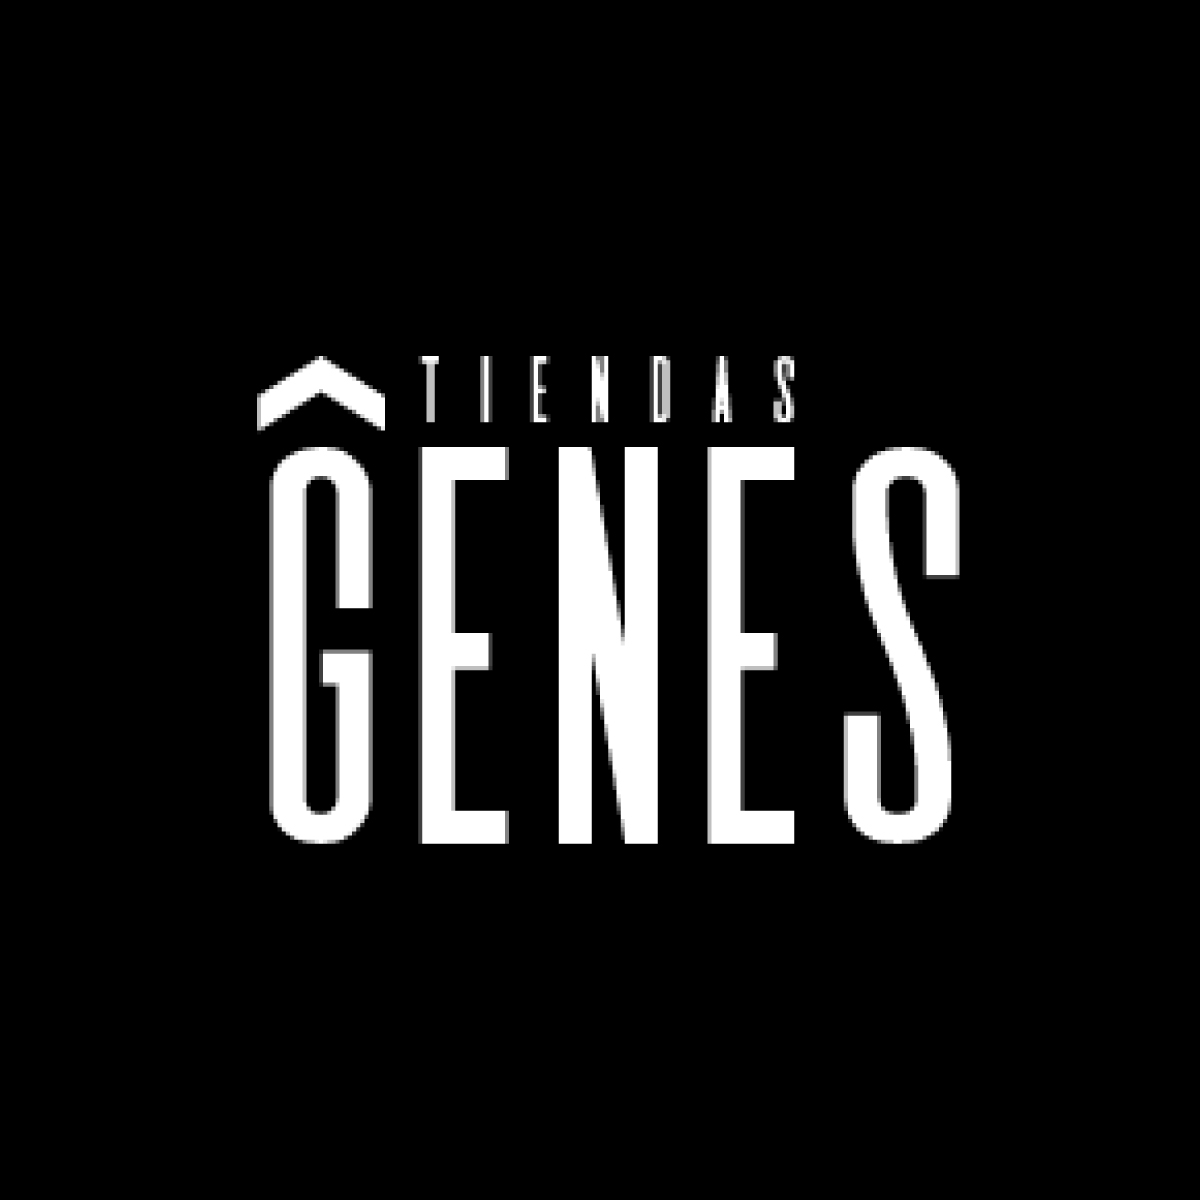 Tienda Genes